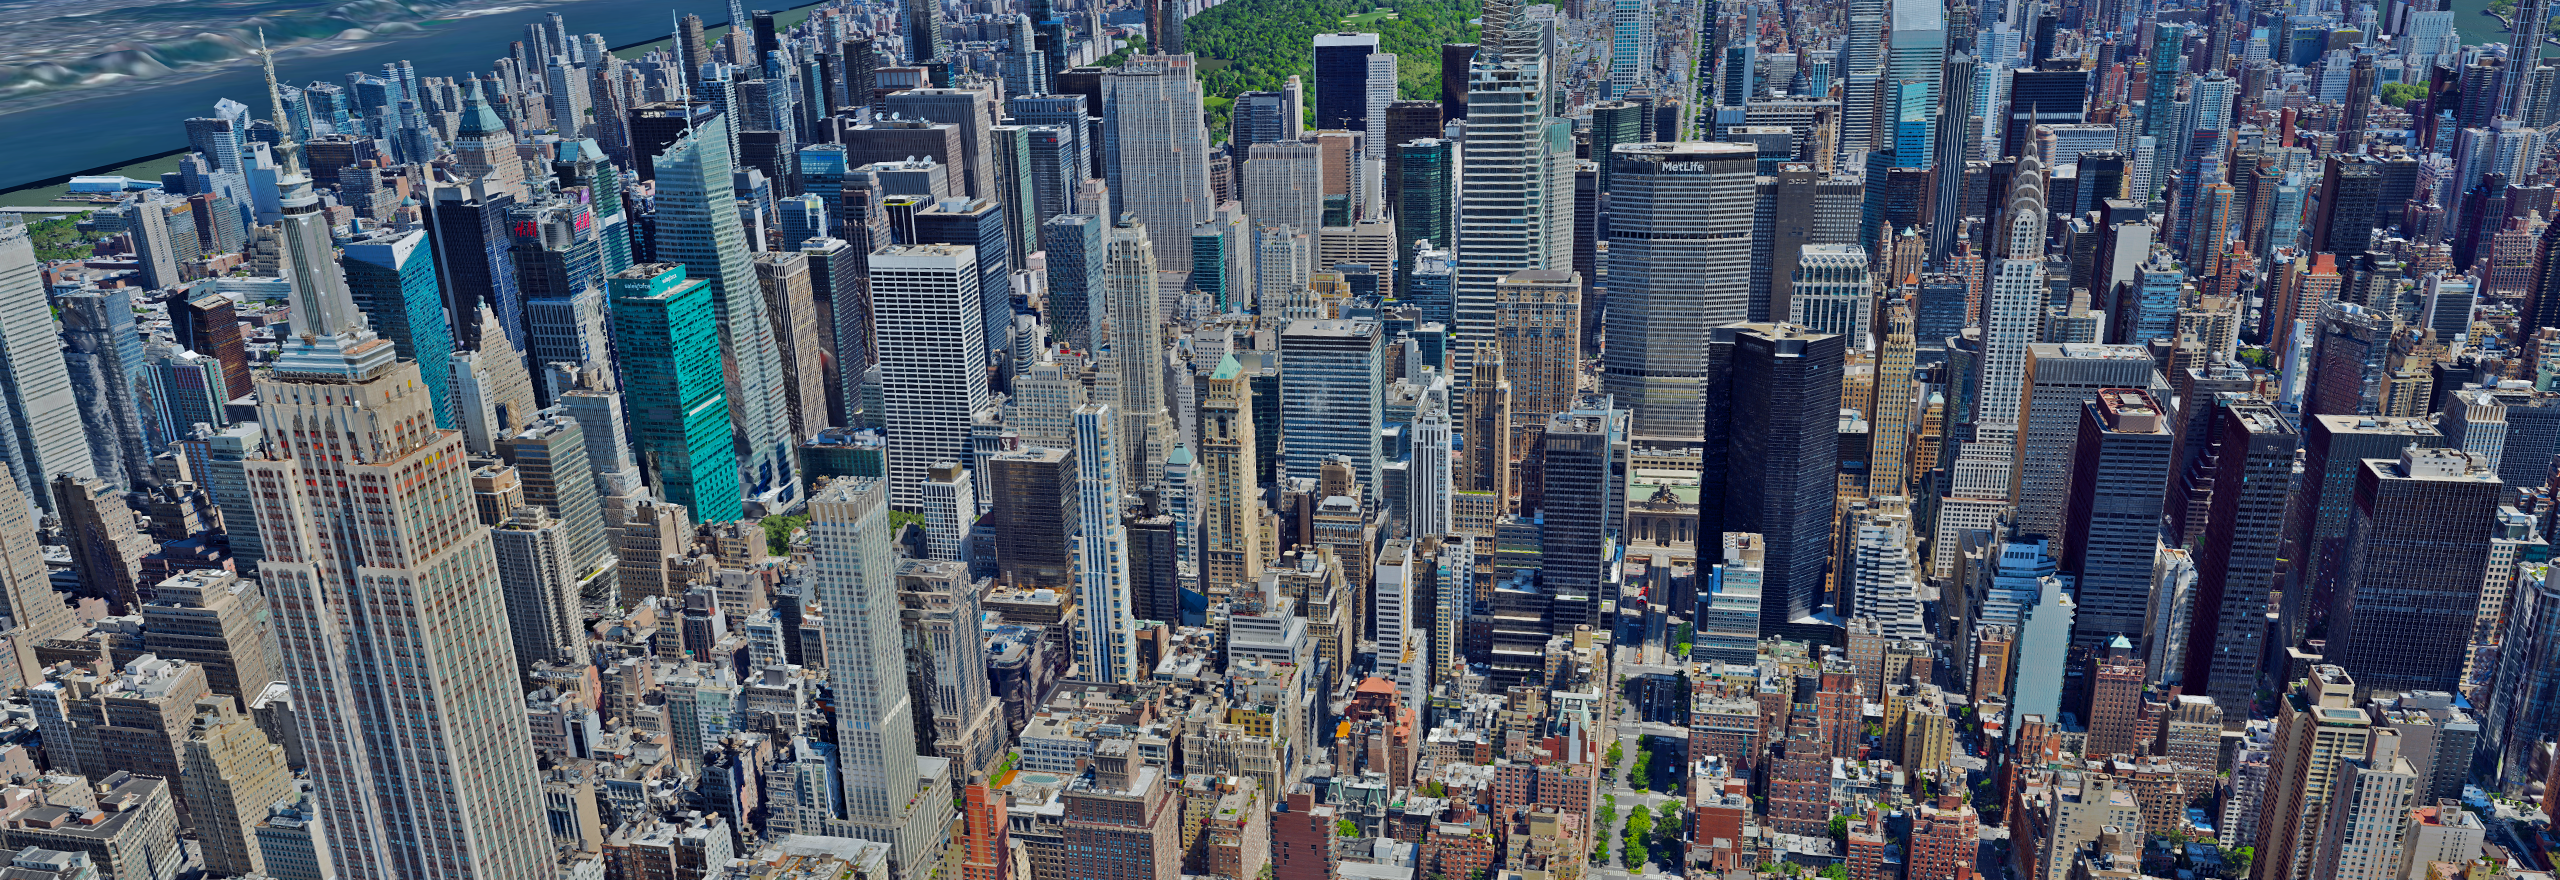 Digitale Überlagerung einer Großstadt von oben gesehen